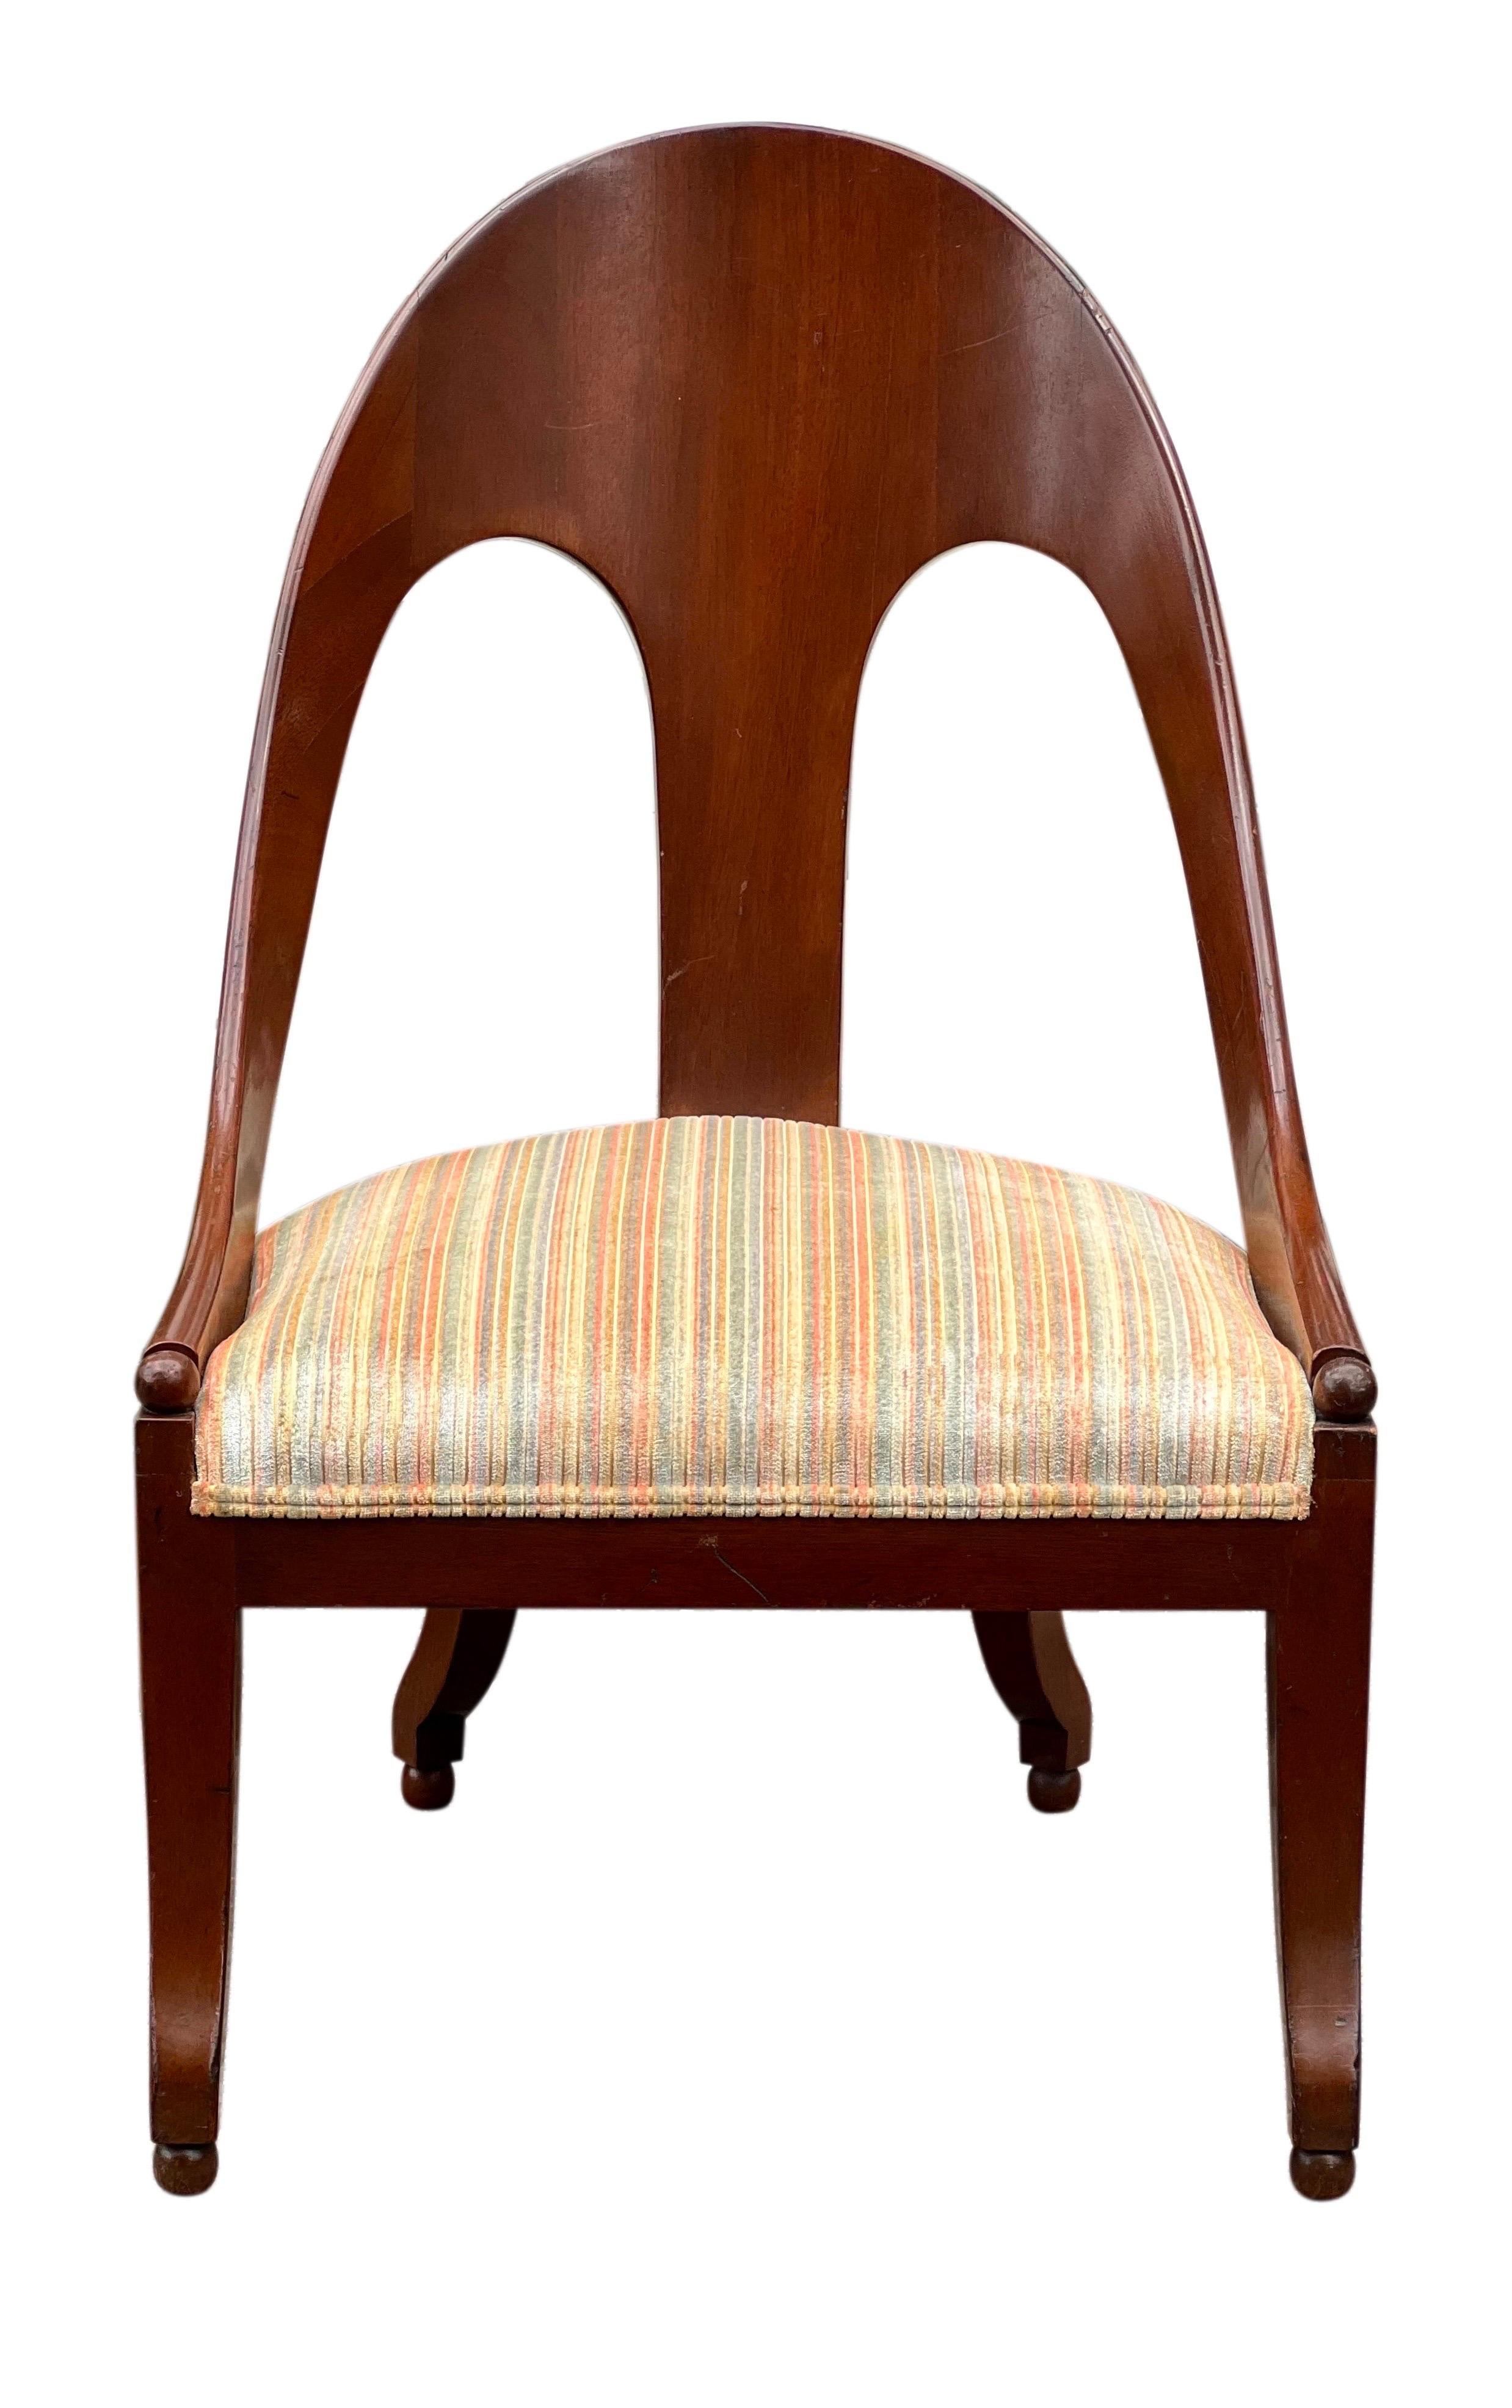 Chaise longue en acajou à dossier en cuillère du milieu du siècle, attribuée à Michael Taylor pour Baker, années 1950.

Chaise aux courbes élégantes avec une structure en acajou dans un design raffiné et confortable de dossier en cuillère, accentué